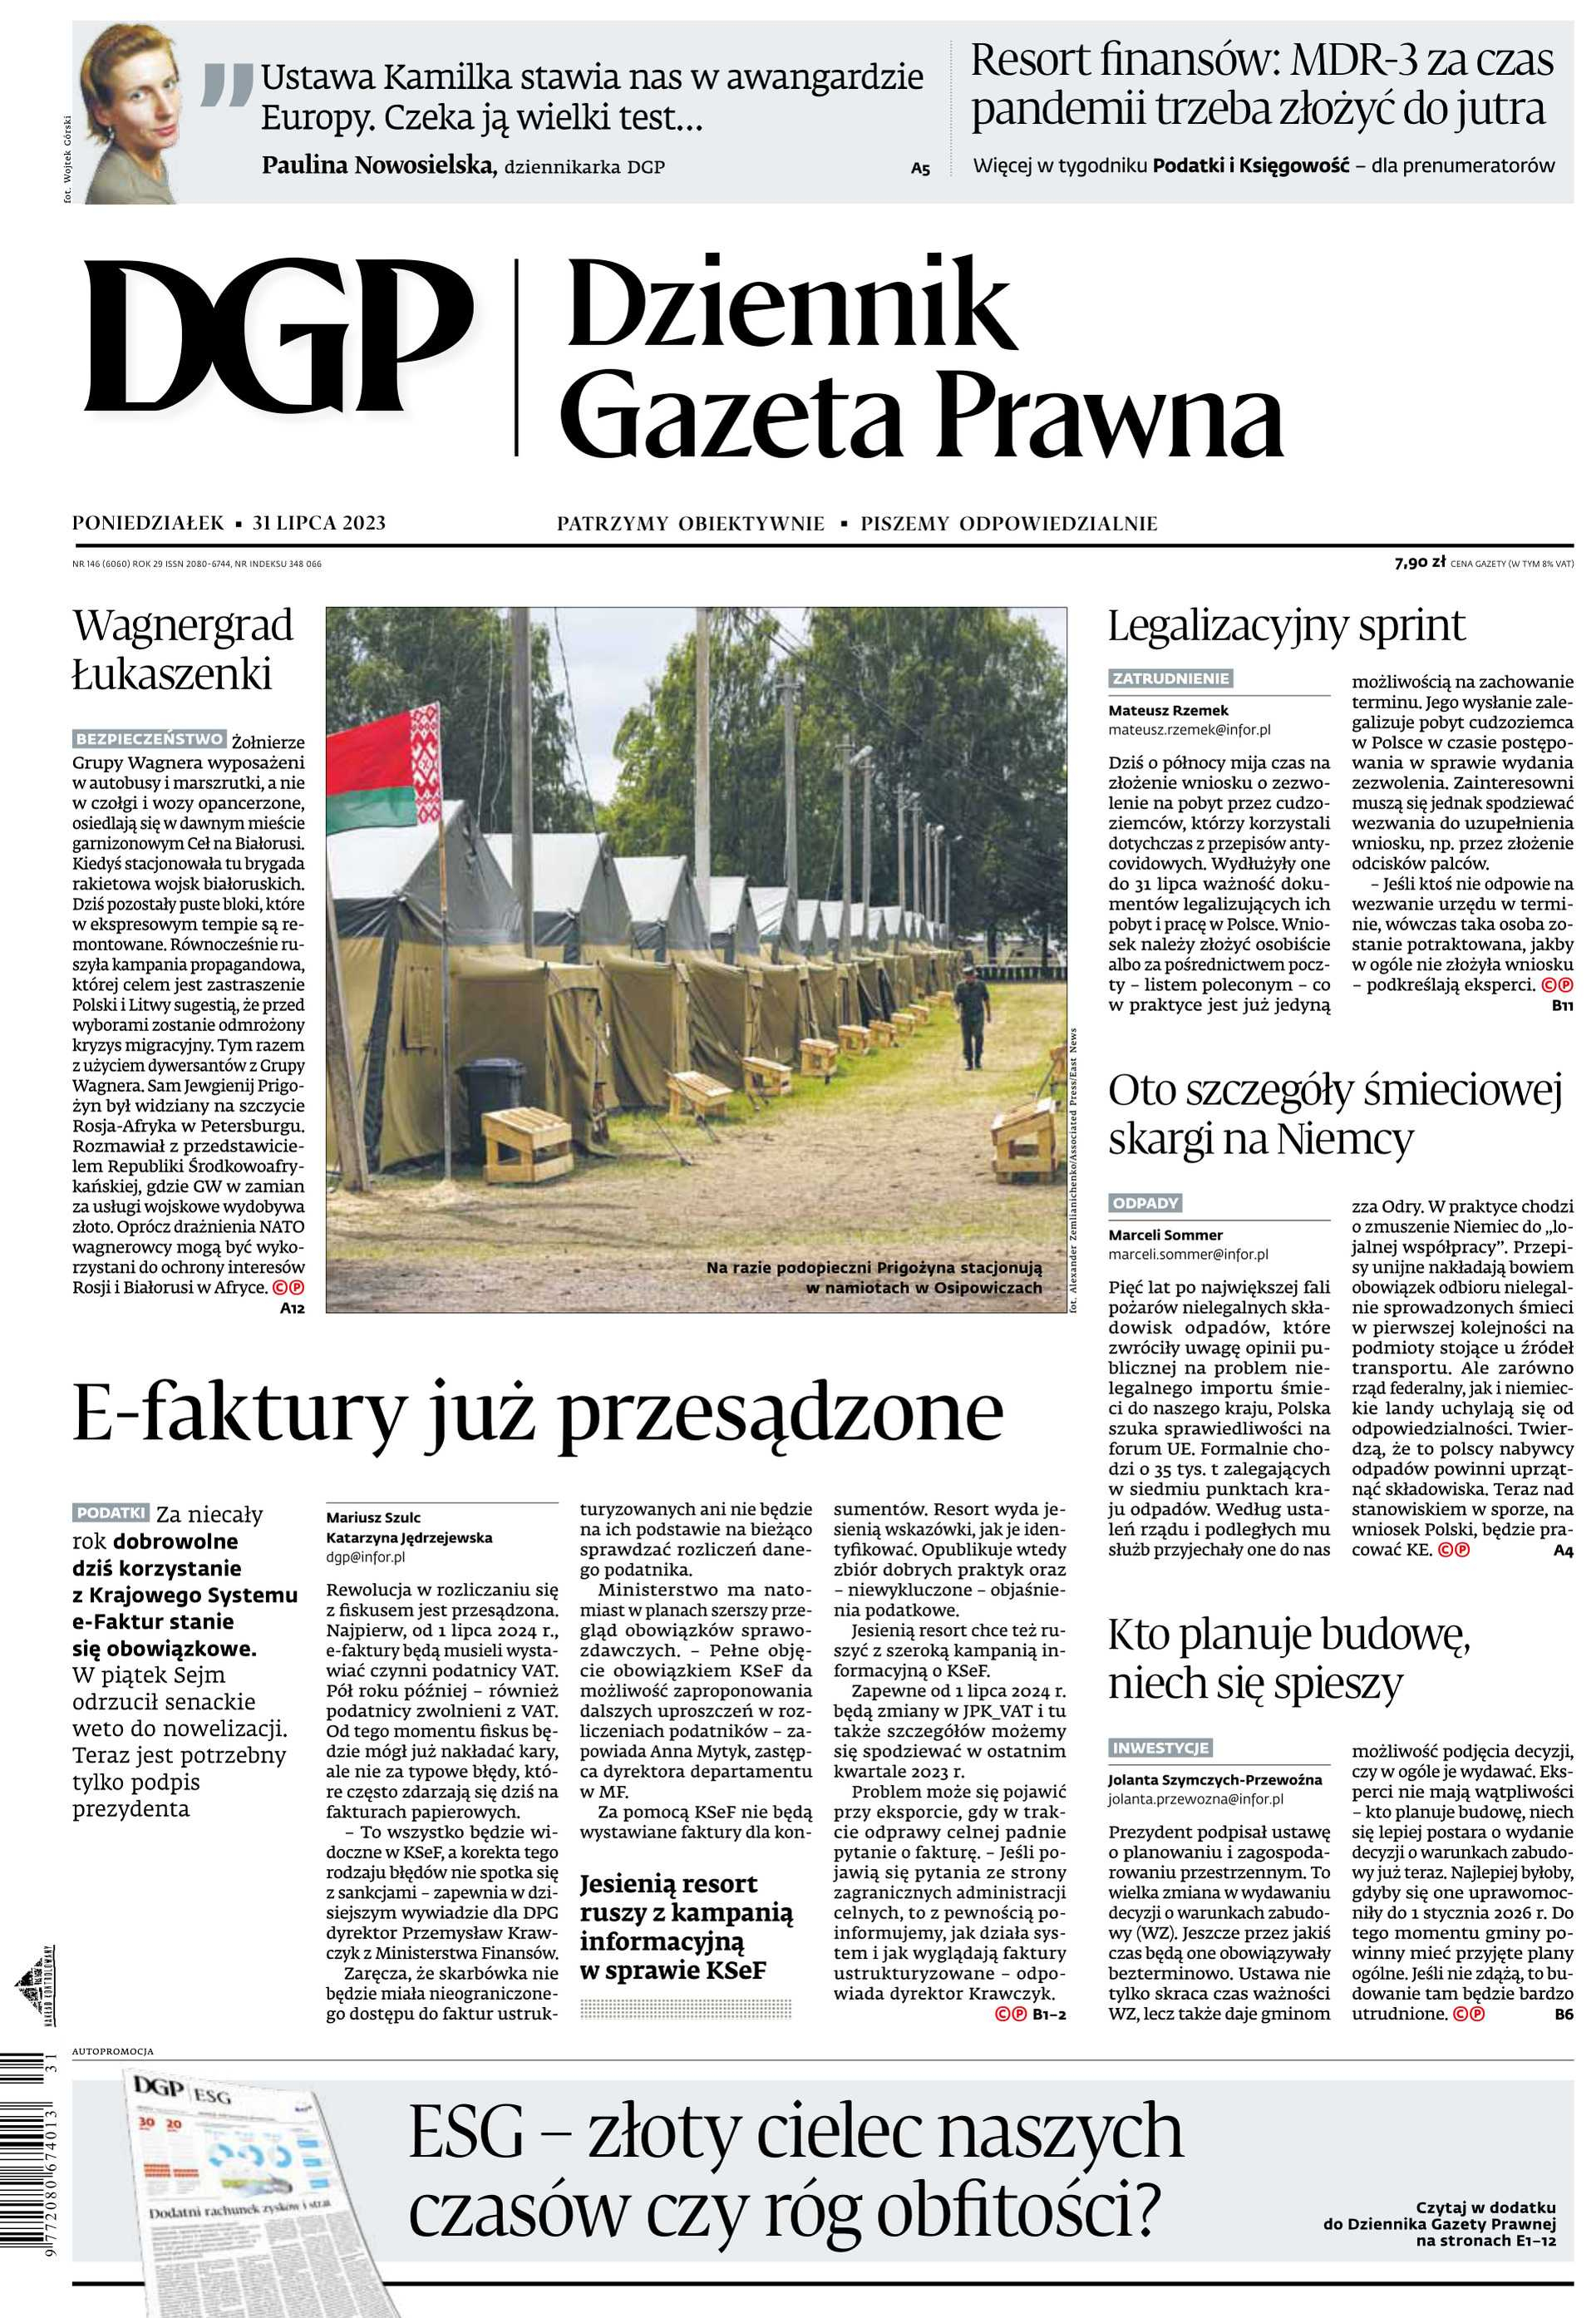 Dziennik Gazeta Prawna_cover